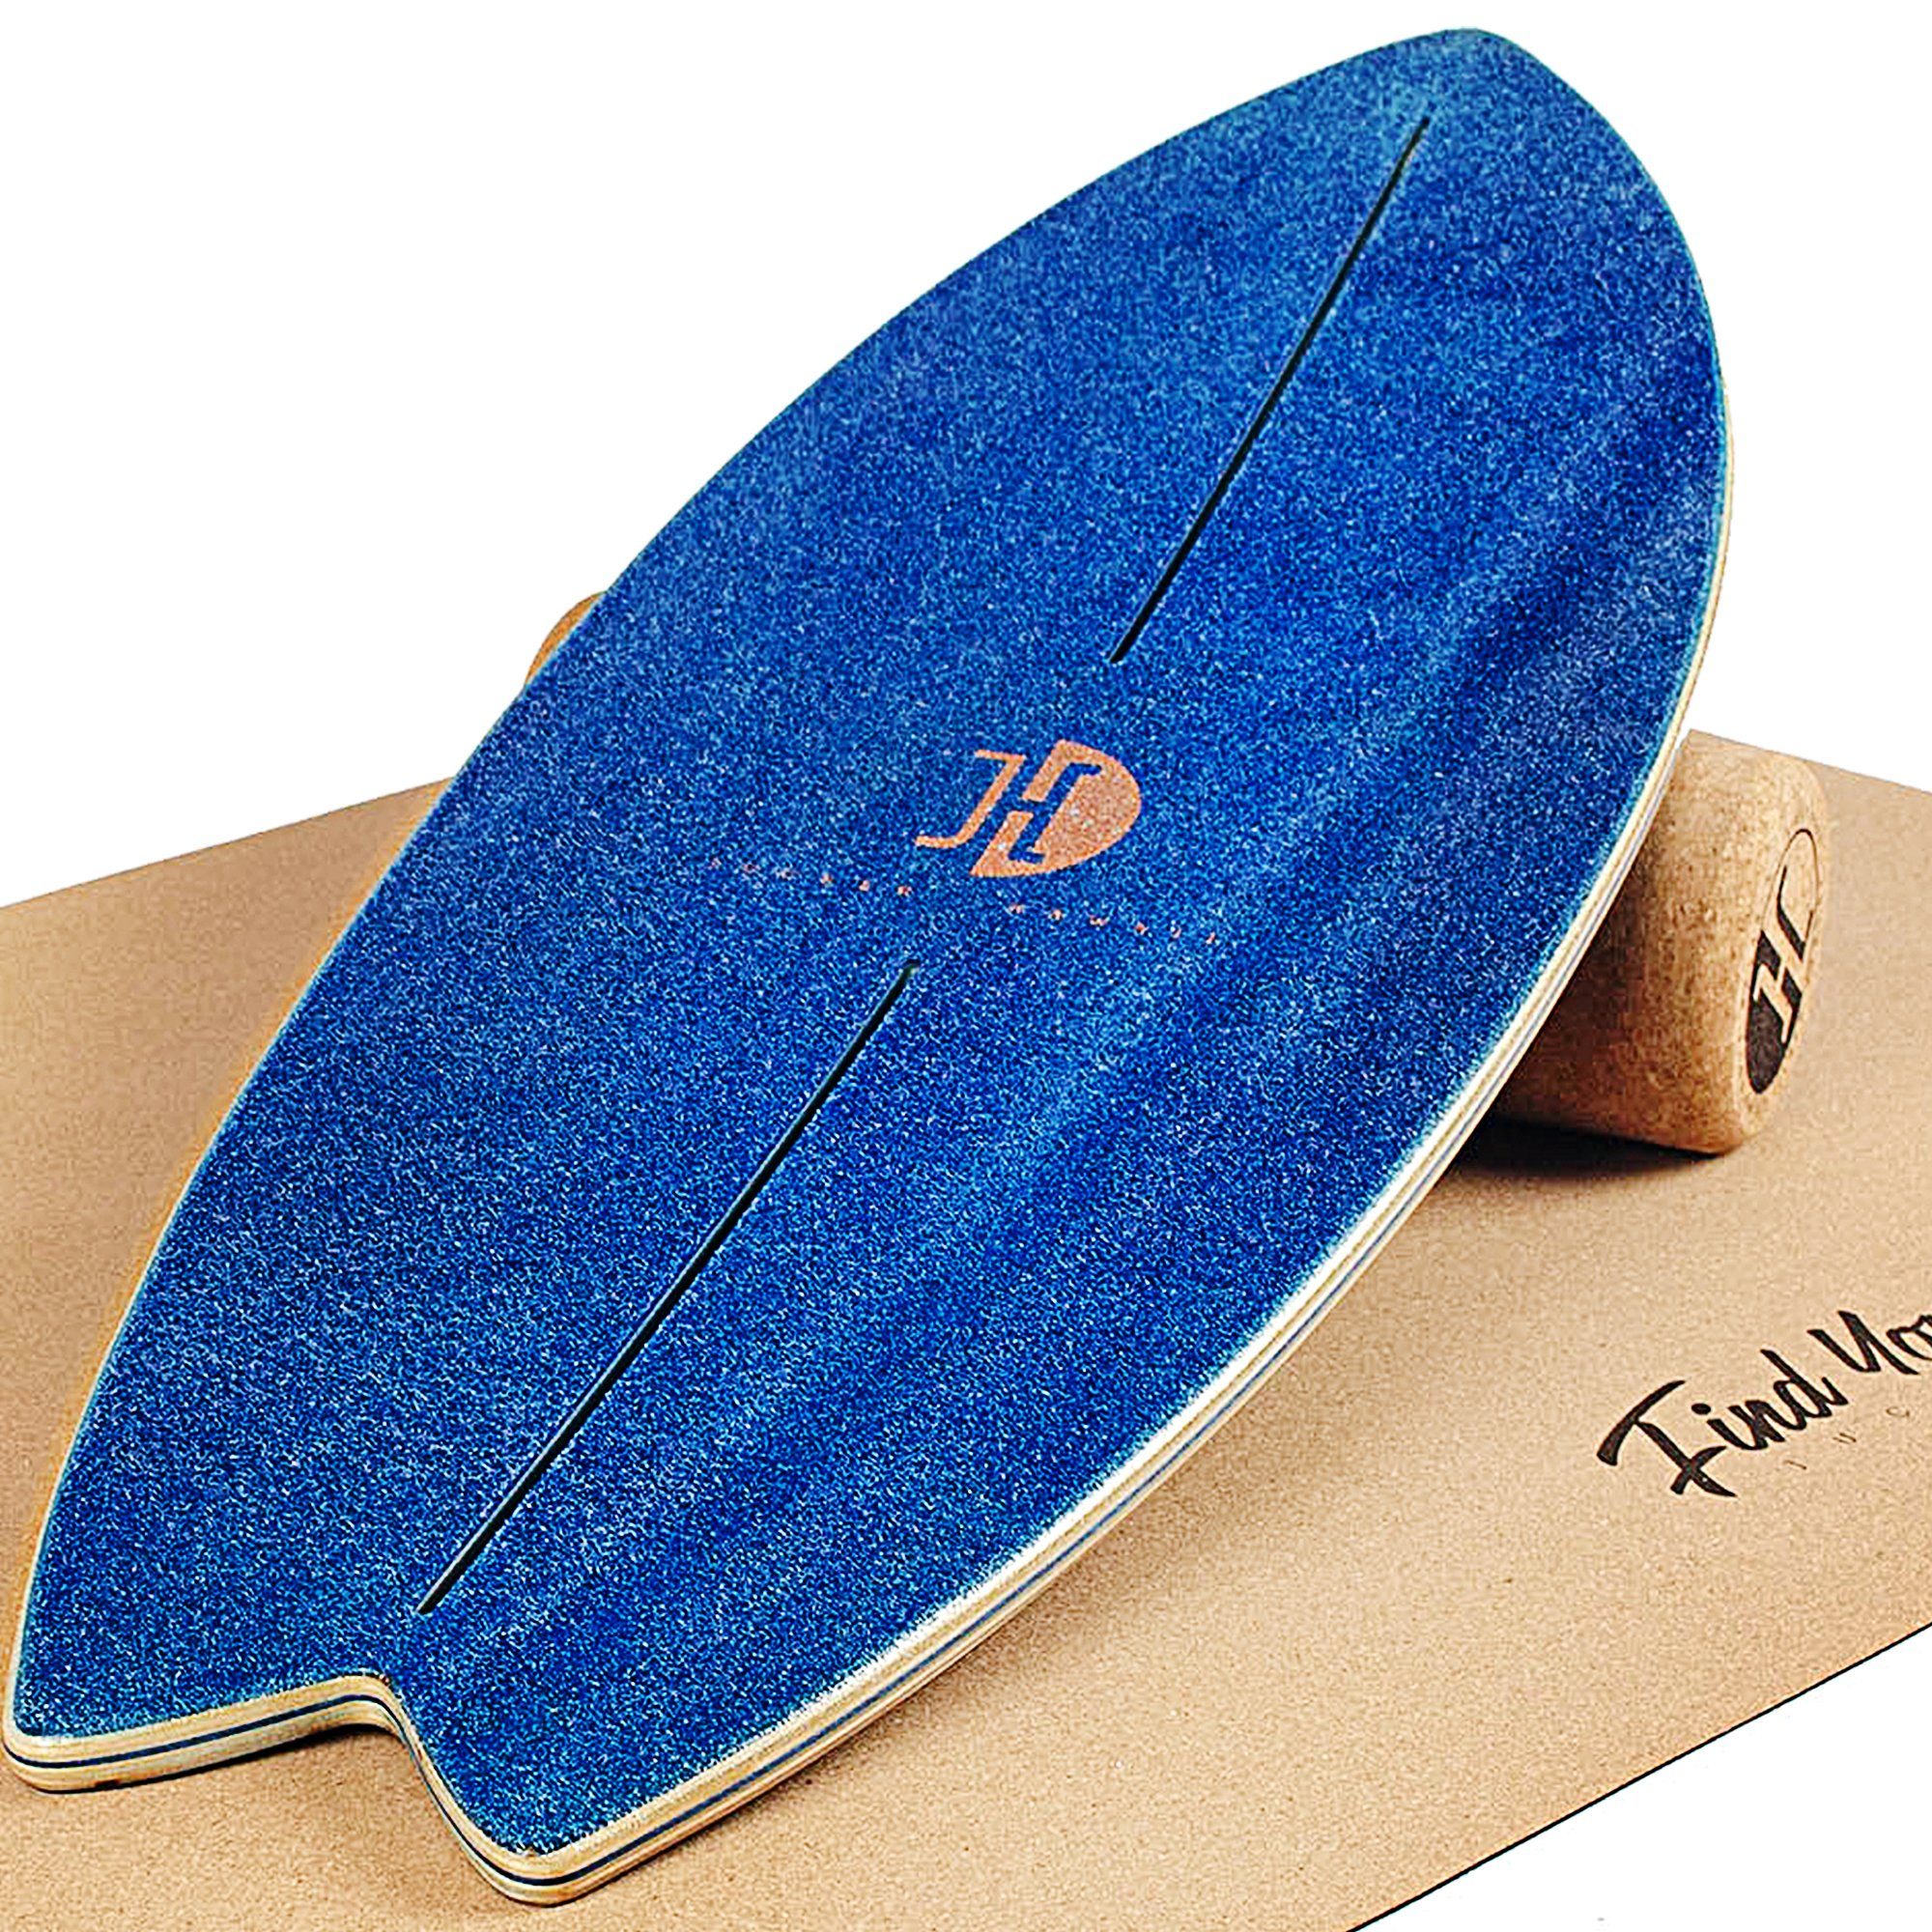 JUCKER HAWAII Balanceboard Ocean Rocker Blue, Surf Balance Board Set inkl. Korkrolle & Matte, Professionelles Balance Board mit Rocker Shape aus 100% Echtholz